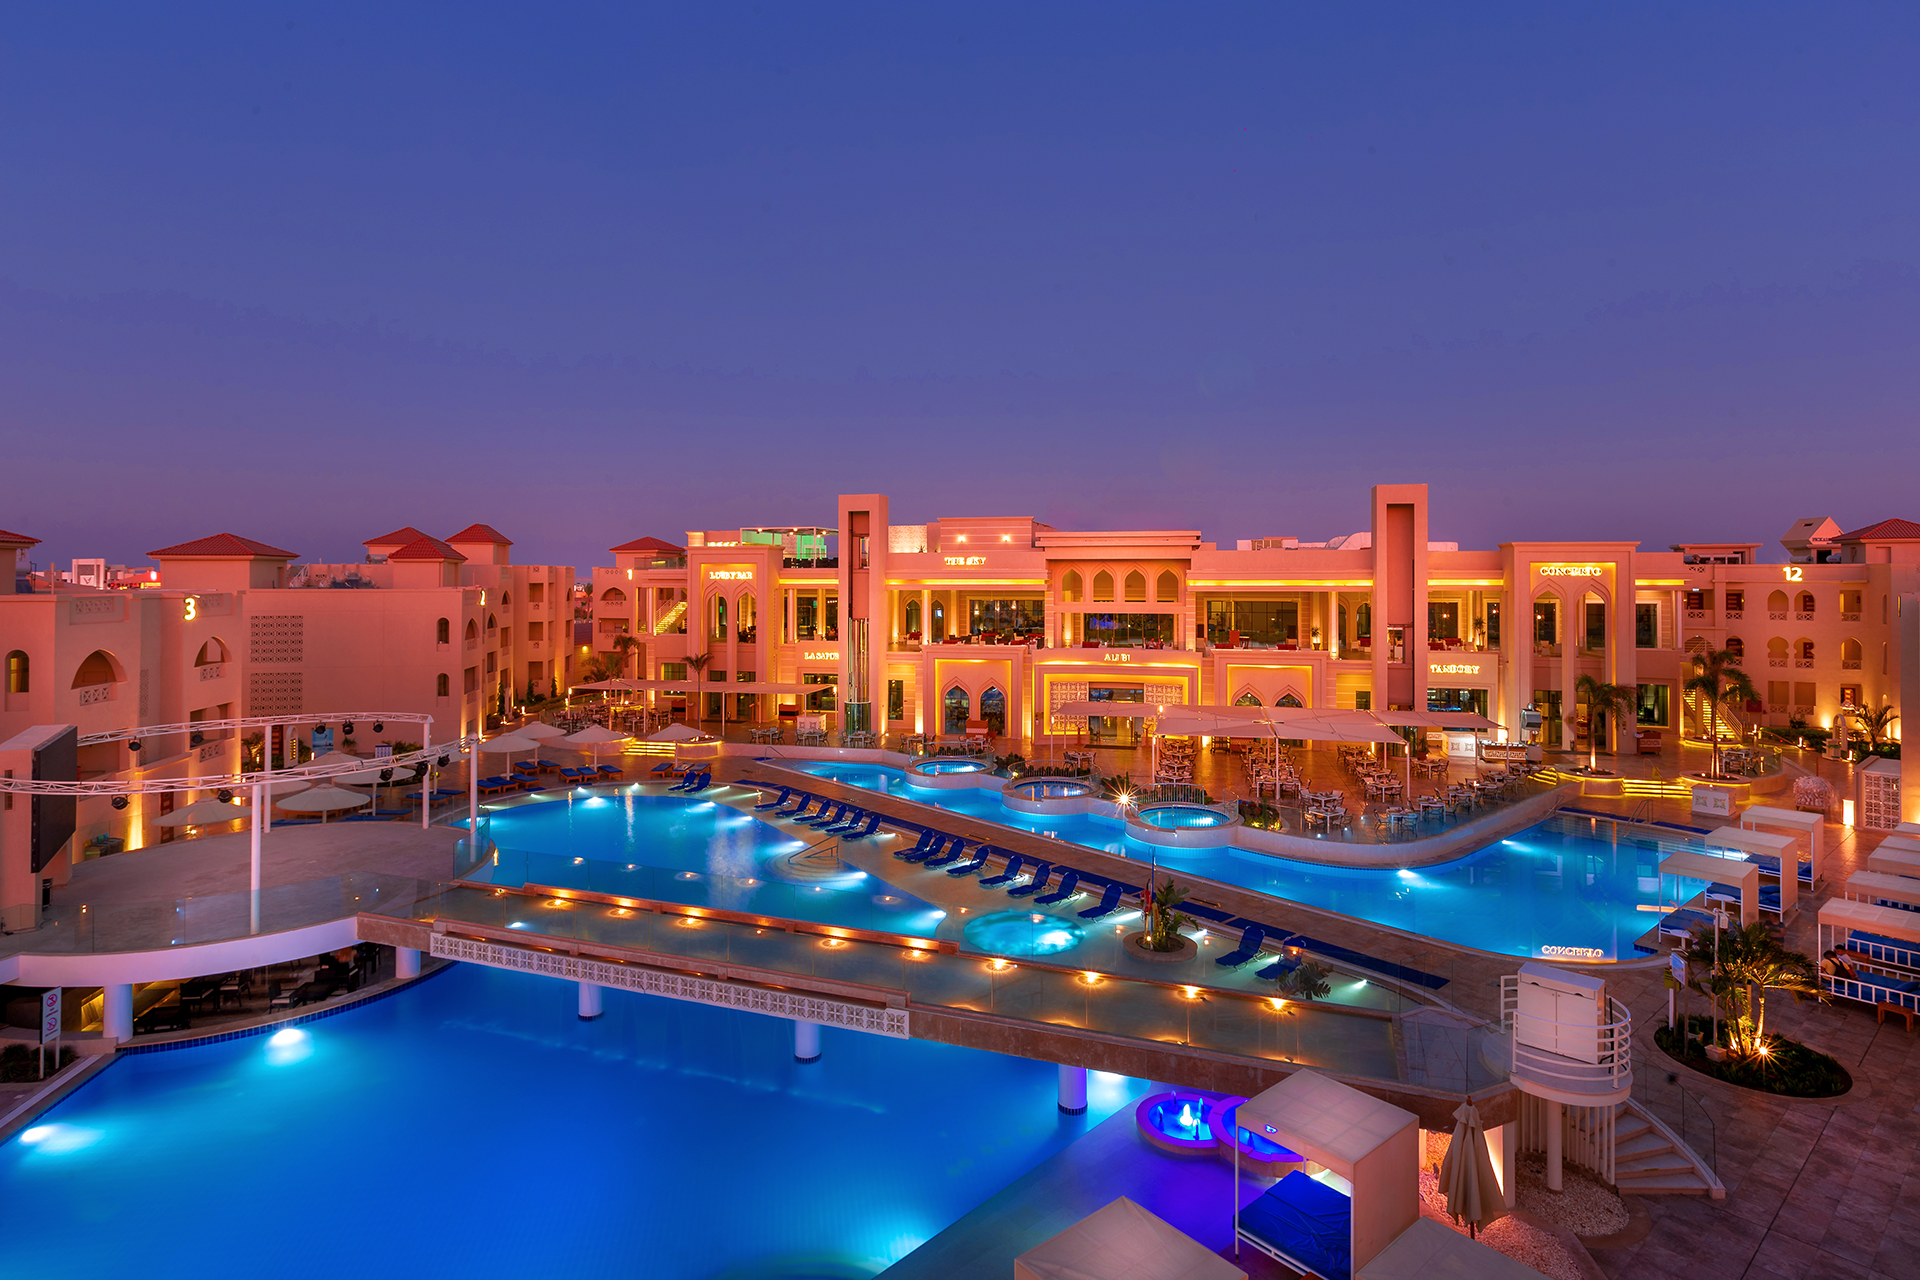 Pickalbatros Aqua Blu Resort - Hurghada - Hurghada